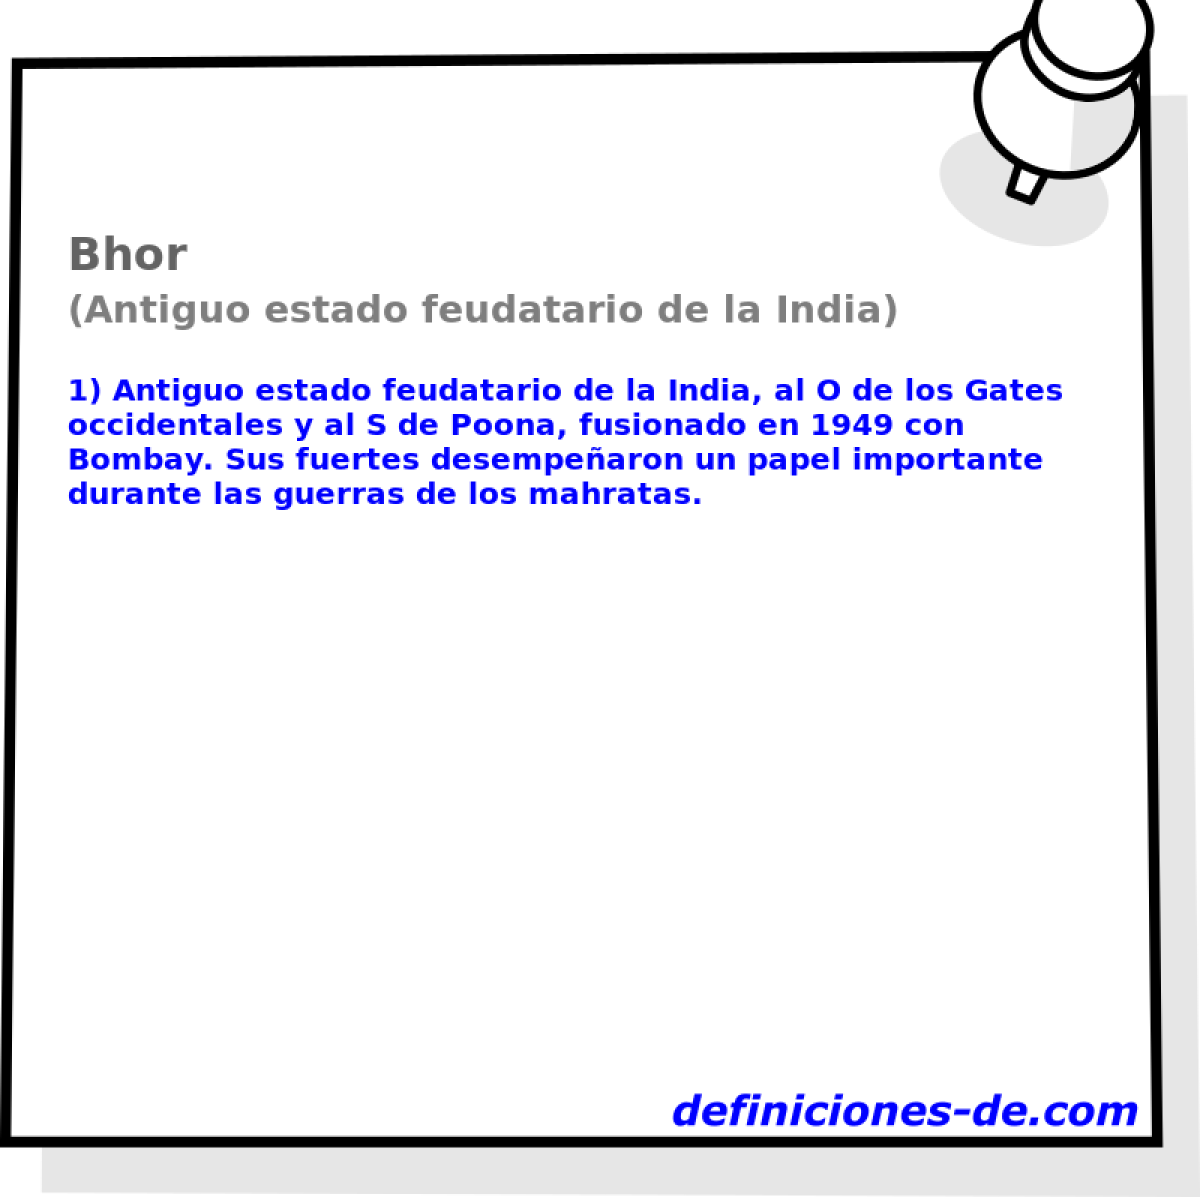 Bhor (Antiguo estado feudatario de la India)